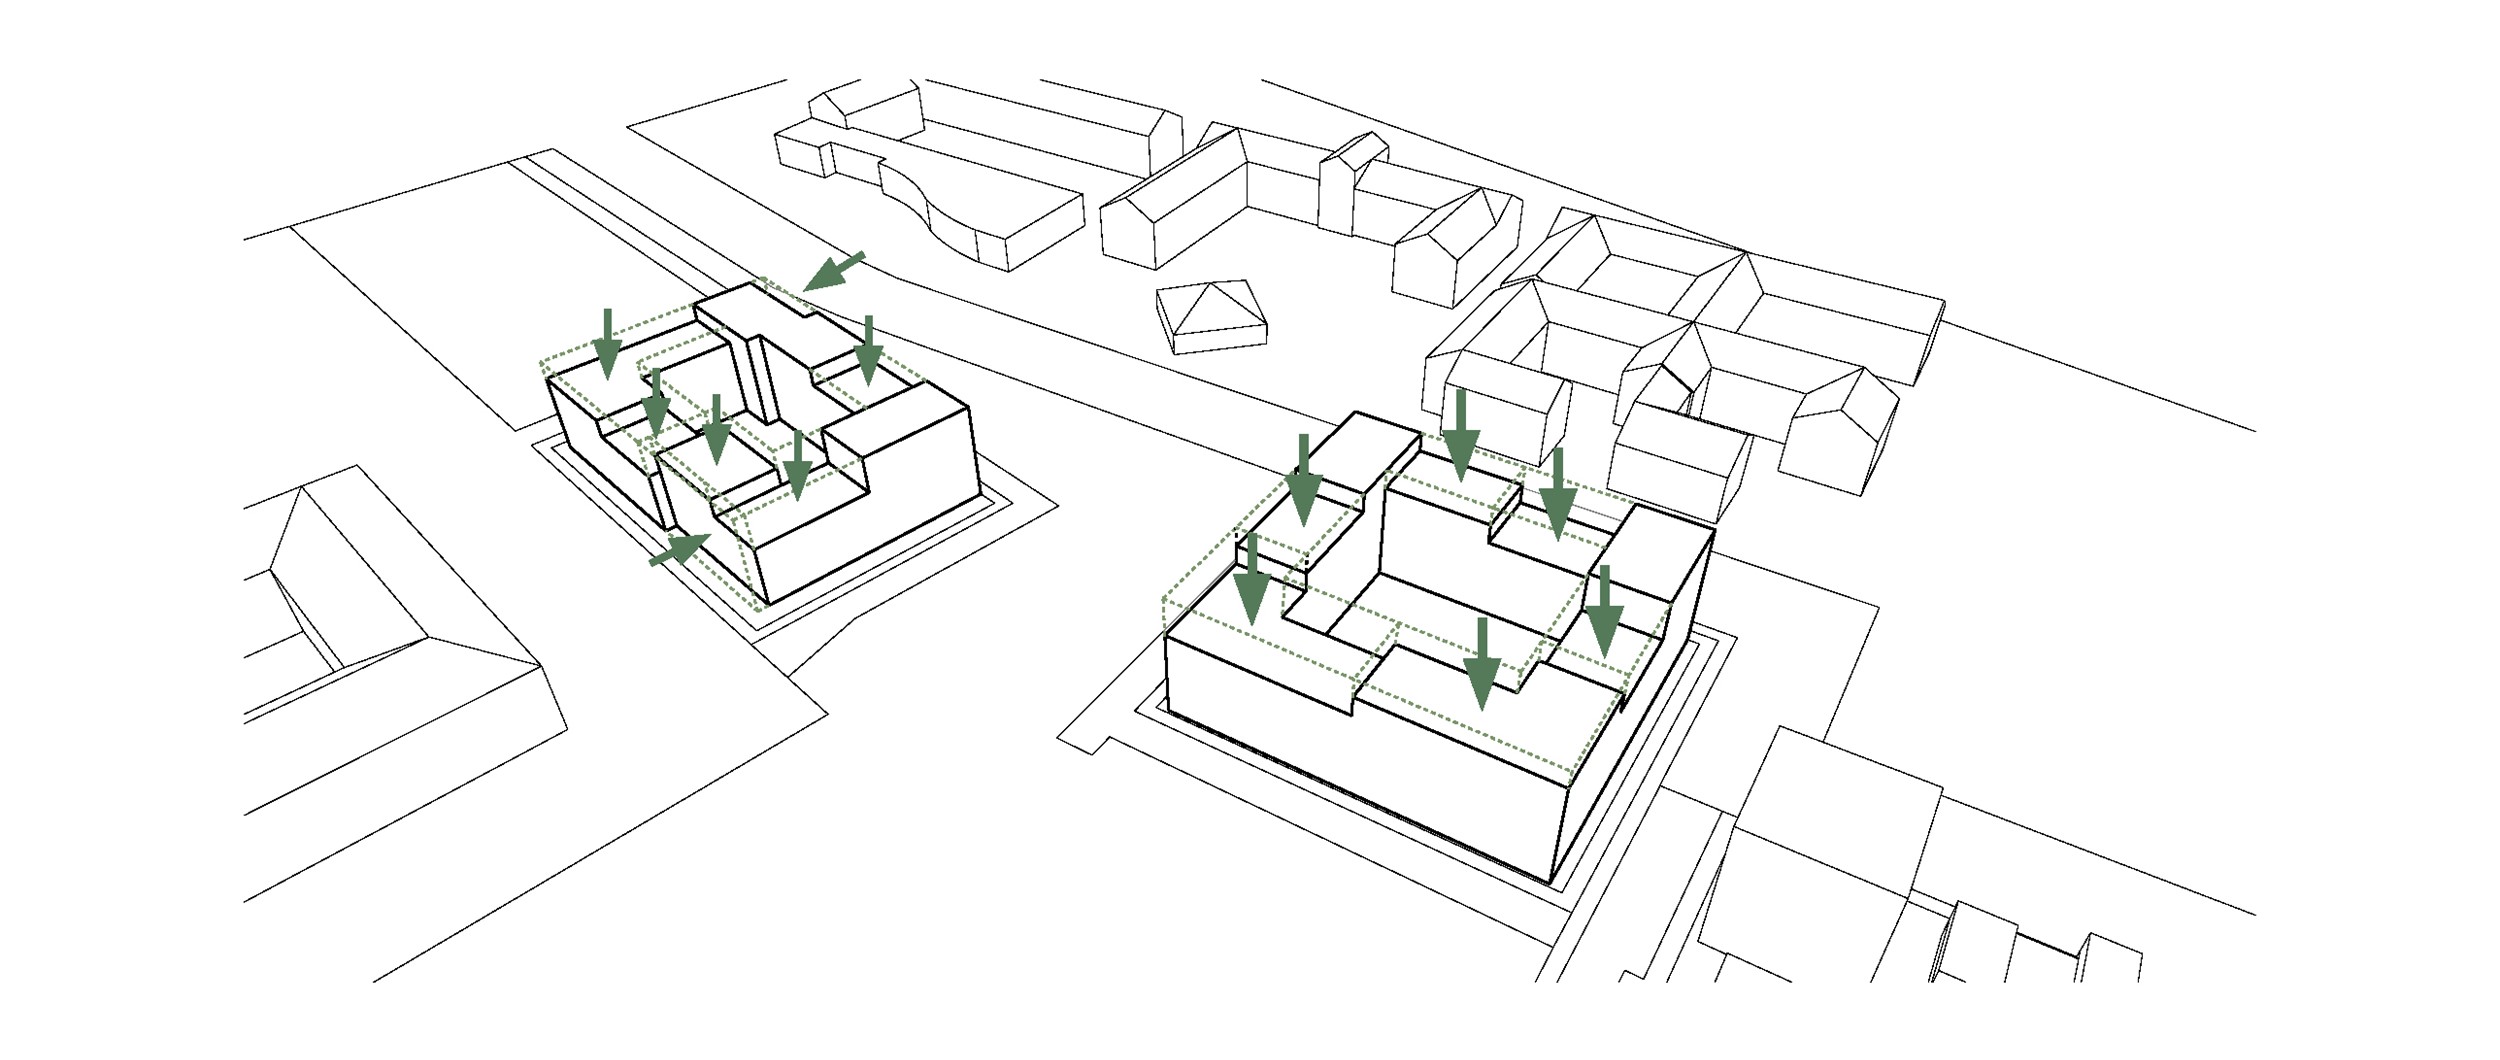 Variation af bygningshøjder skaber rumlig variation og naturlige adgange til tagfladerne.